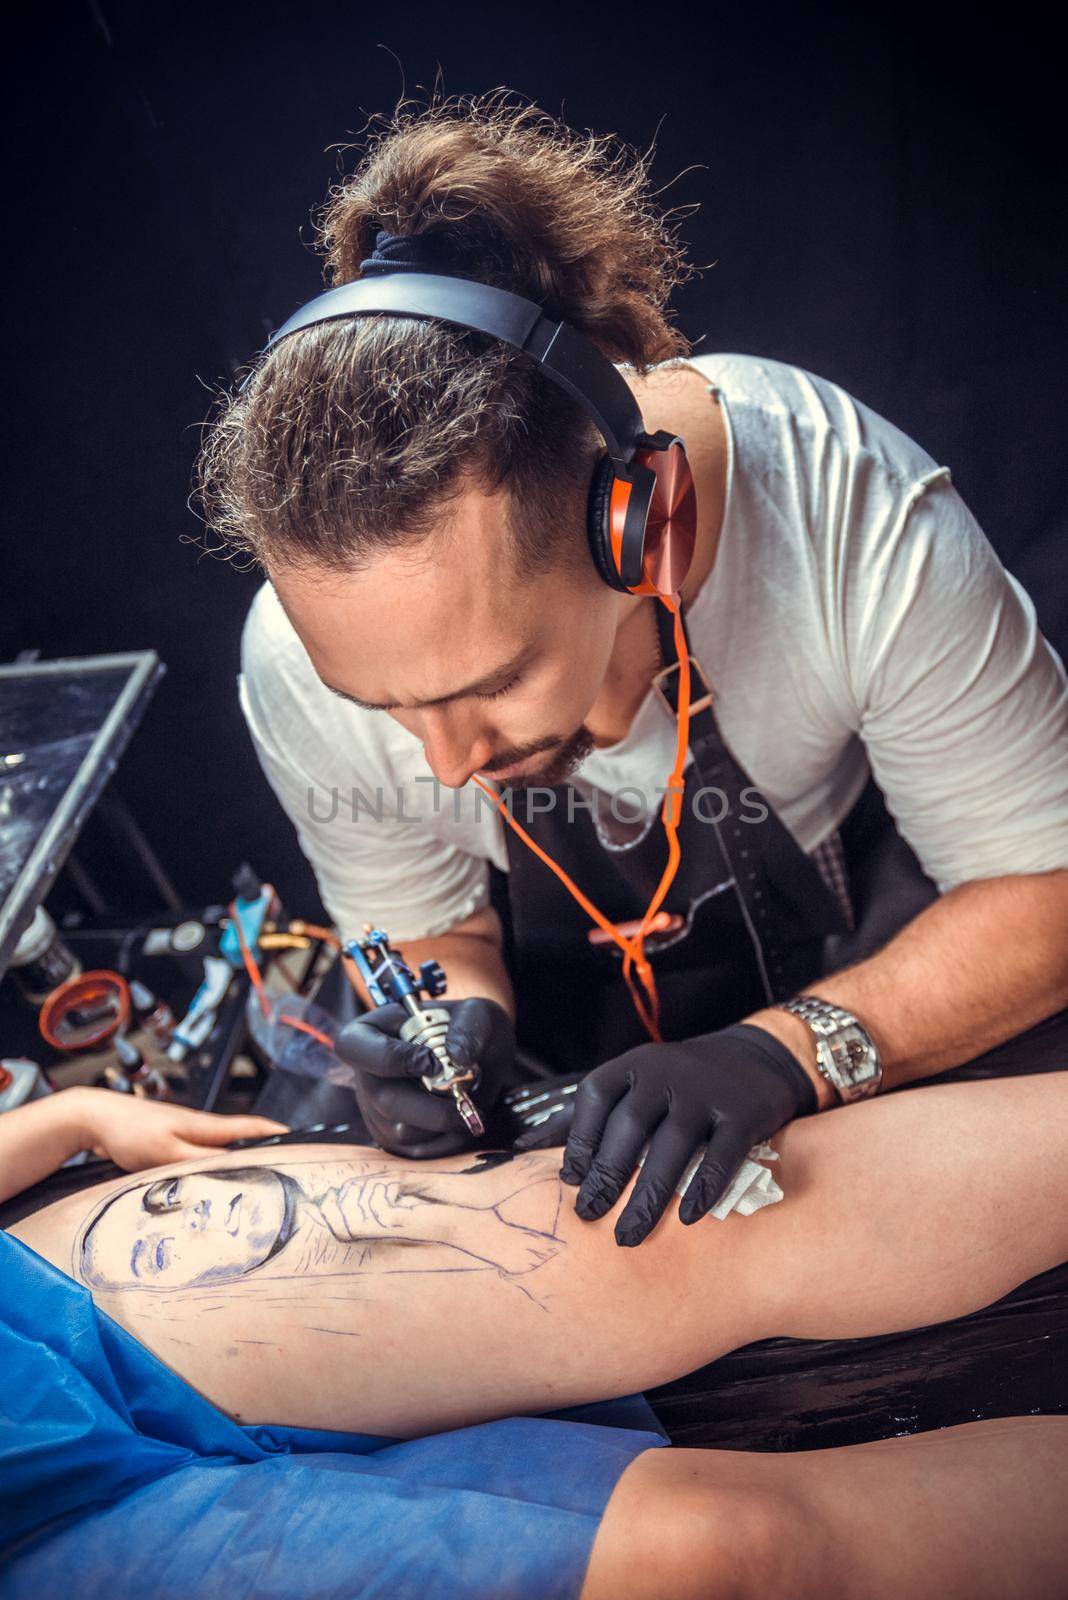 Tattoo specialist working tattooing in tattoo studio.